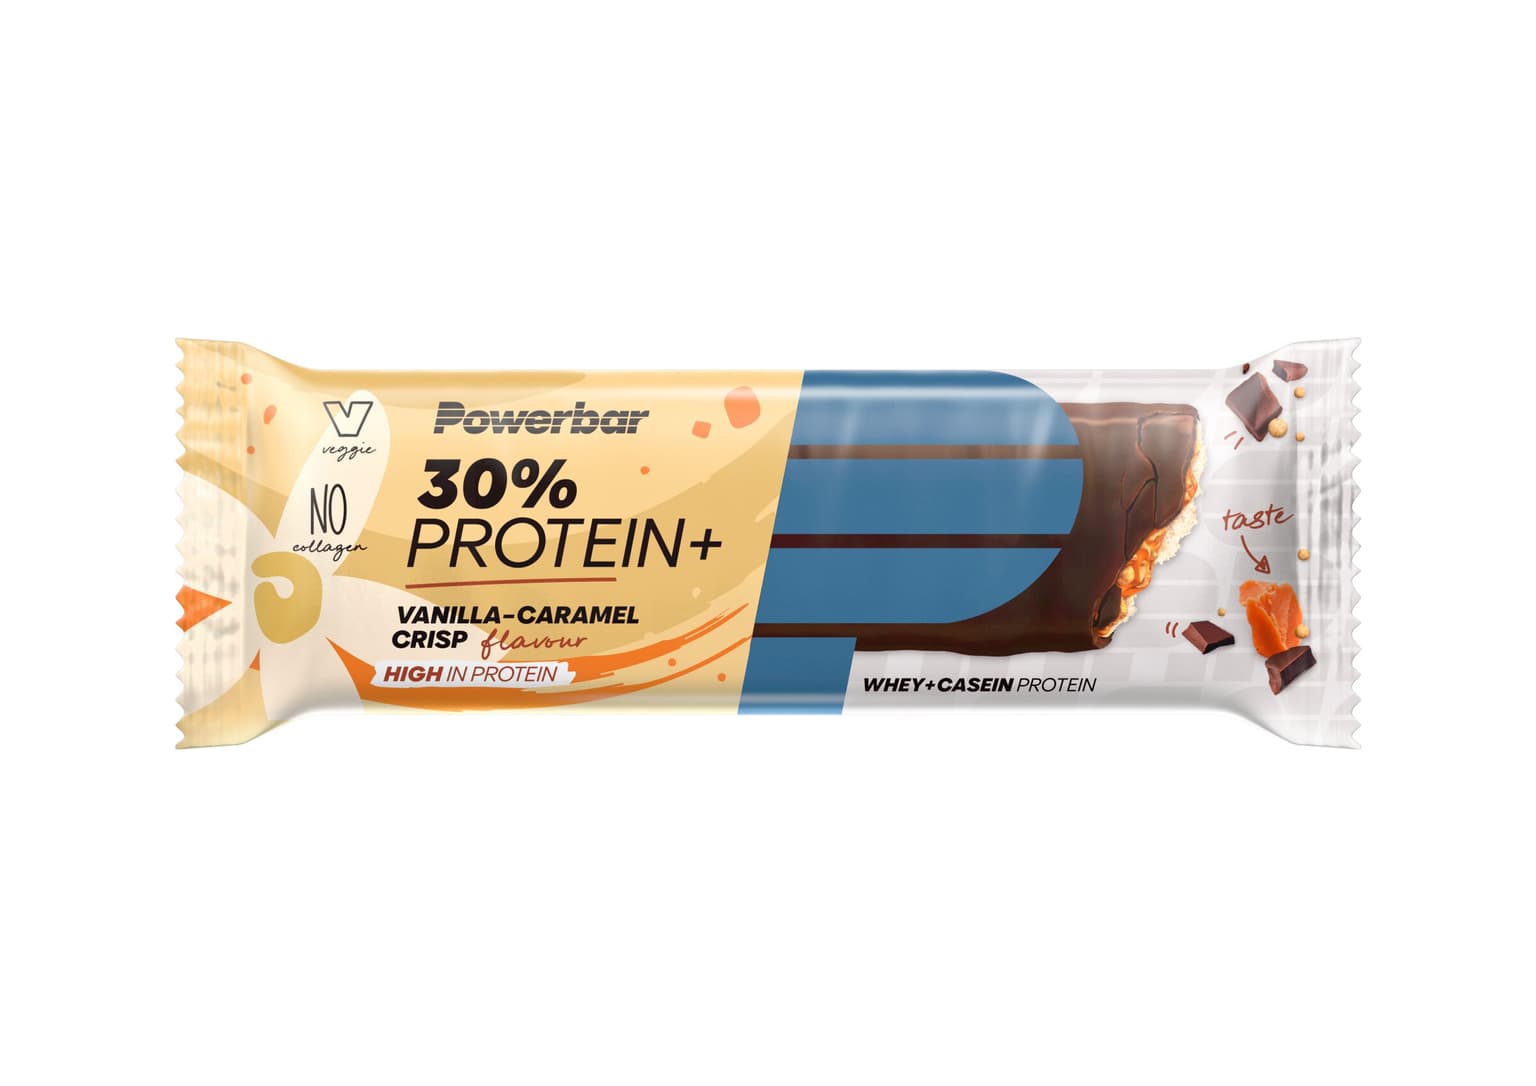 PowerBar PowerBar 30% Protein Plus Proteinriegel 1